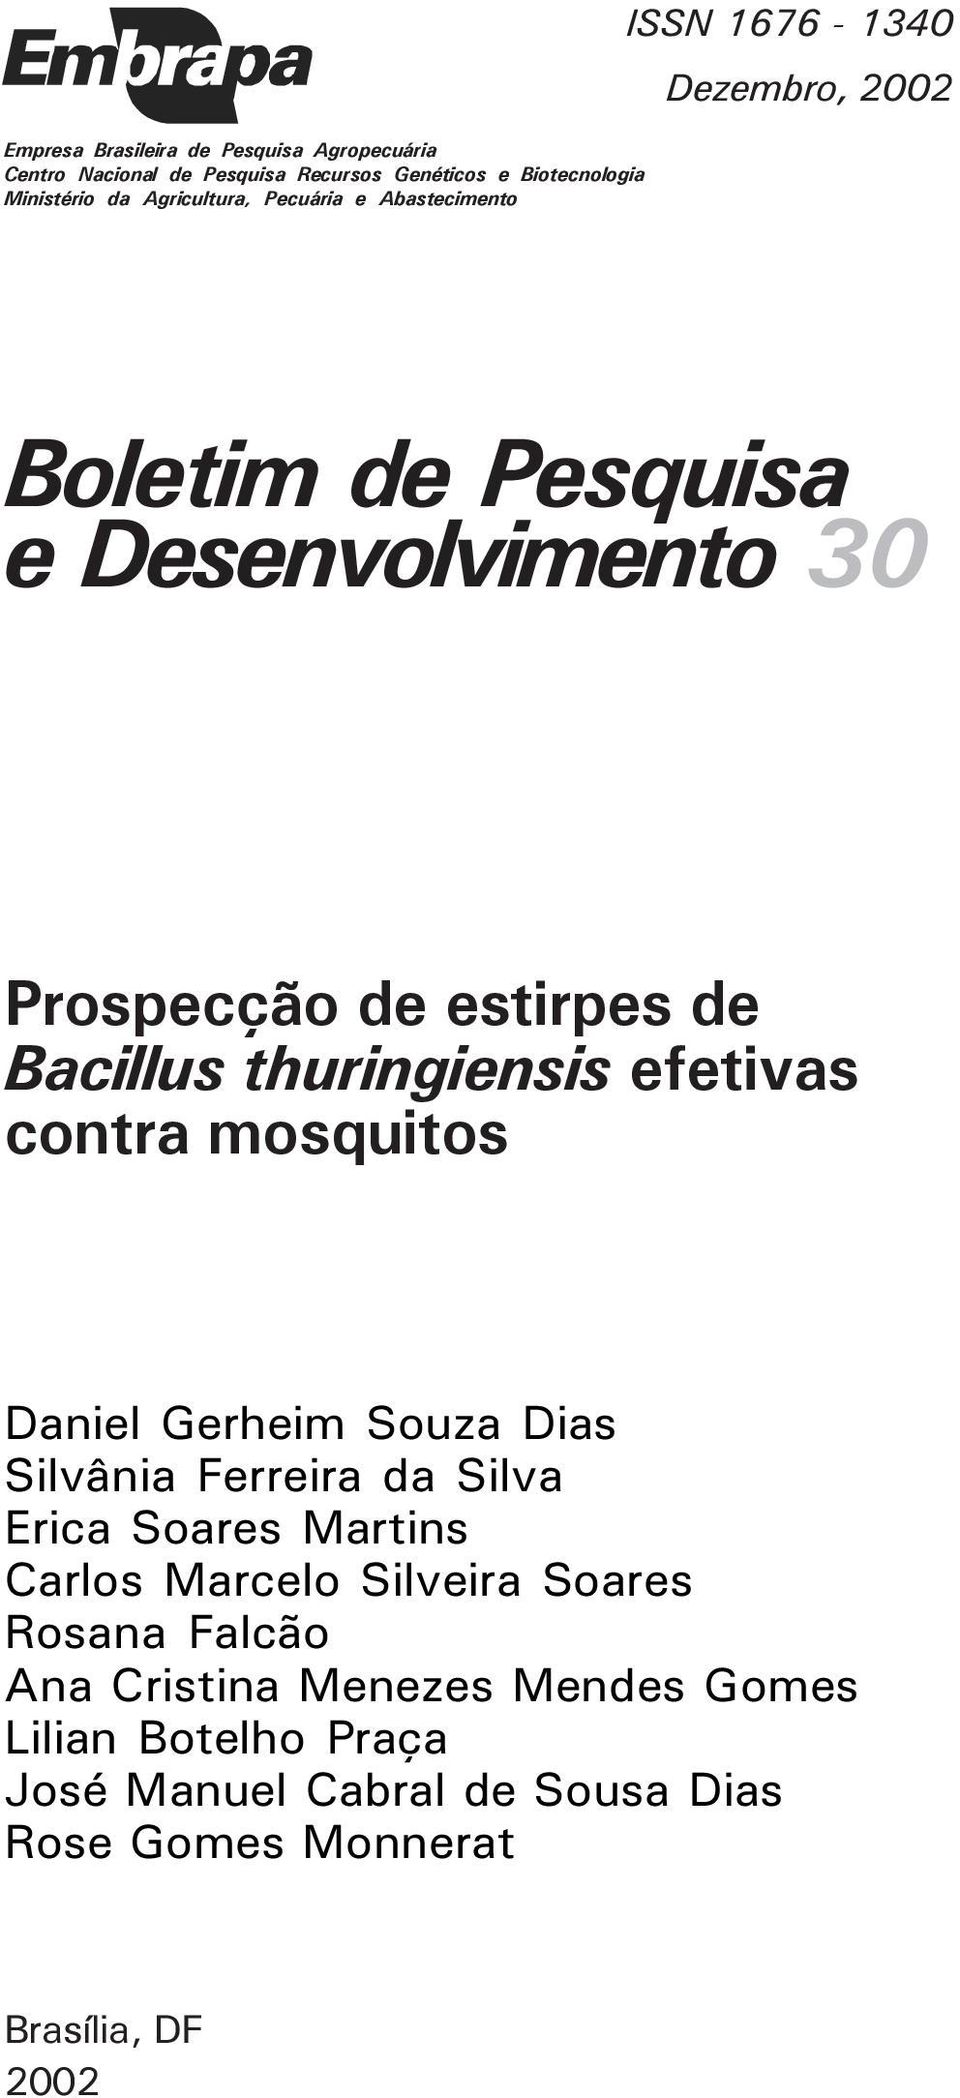 thuringiensis efetivas contra mosquitos Daniel Gerheim Souza Dias Silvânia Ferreira da Silva Erica Soares Martins Carlos Marcelo Silveira